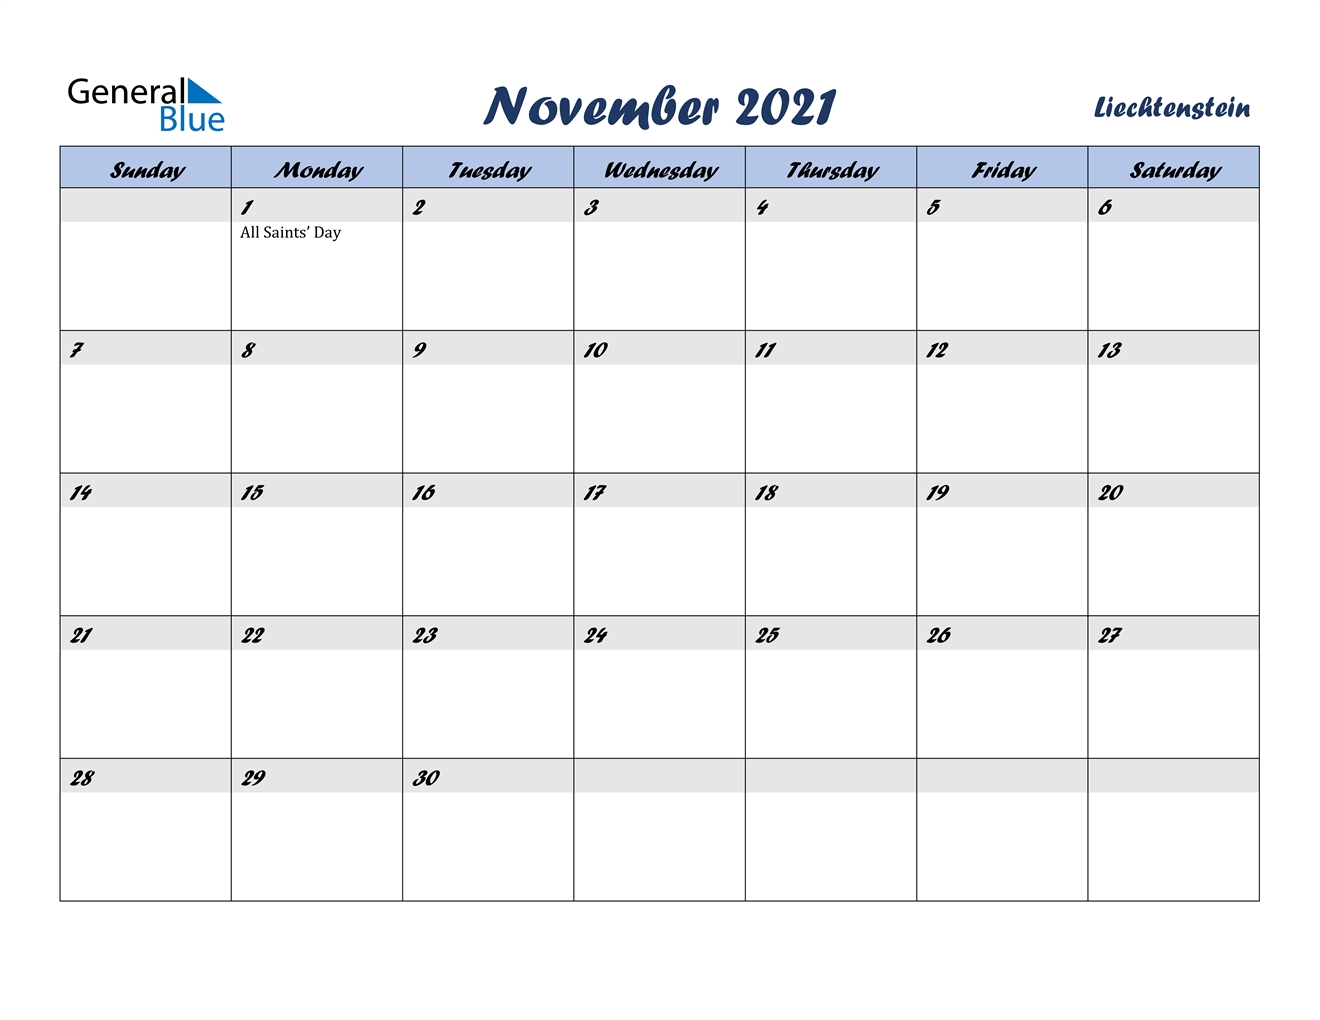 November 2021 Calendar - Liechtenstein Calendar For November And December 2021